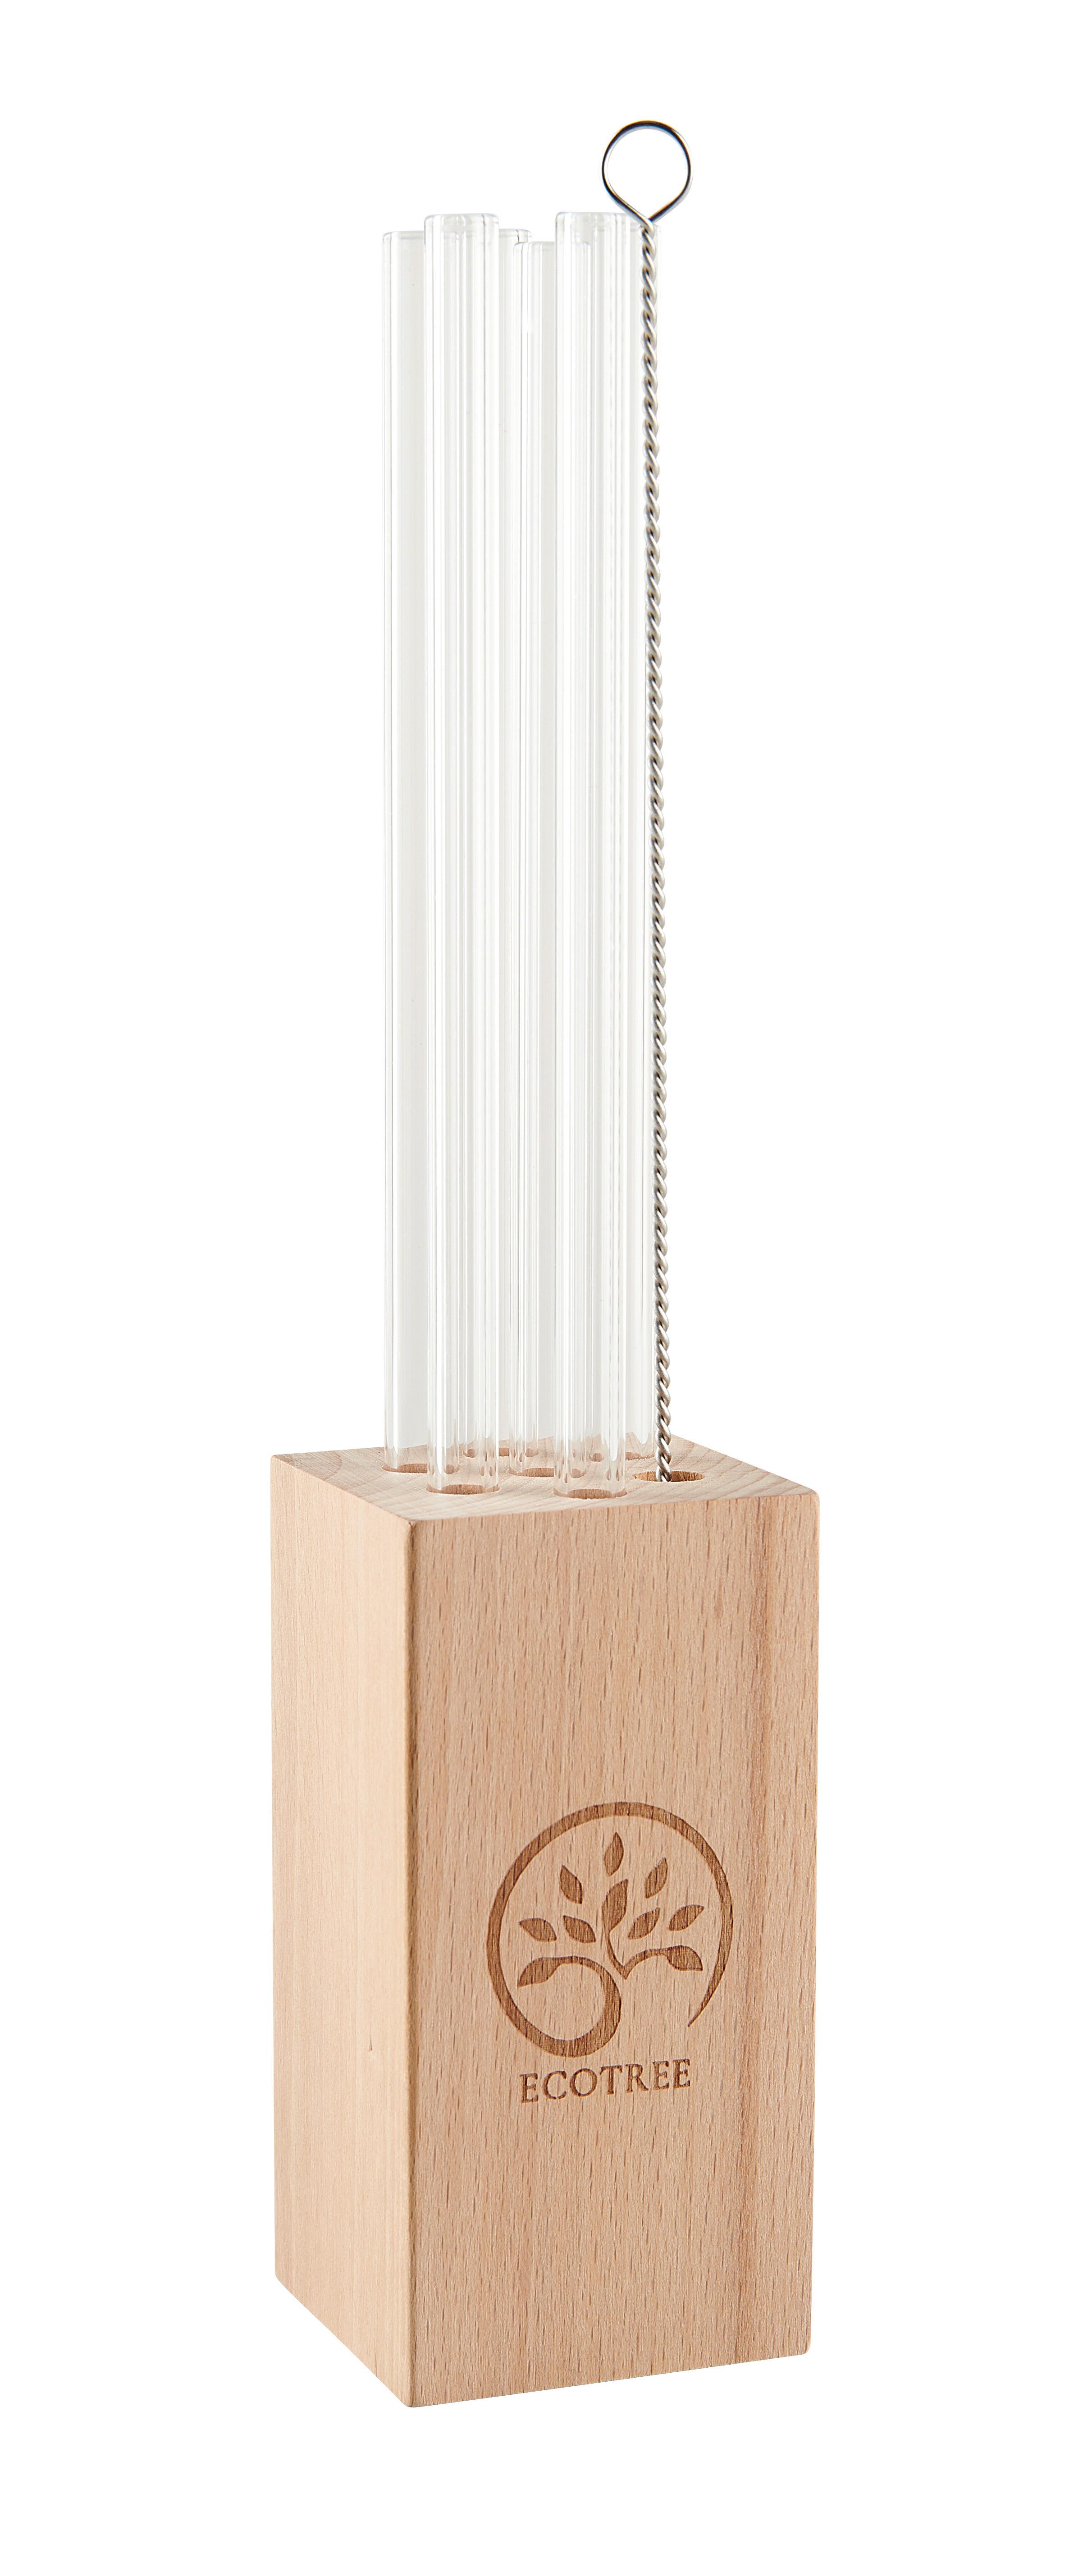 Trinkhalmset Nora aus Holz - Buchefarben, MODERN, Glas/Holz (5/22cm) - ecoTree